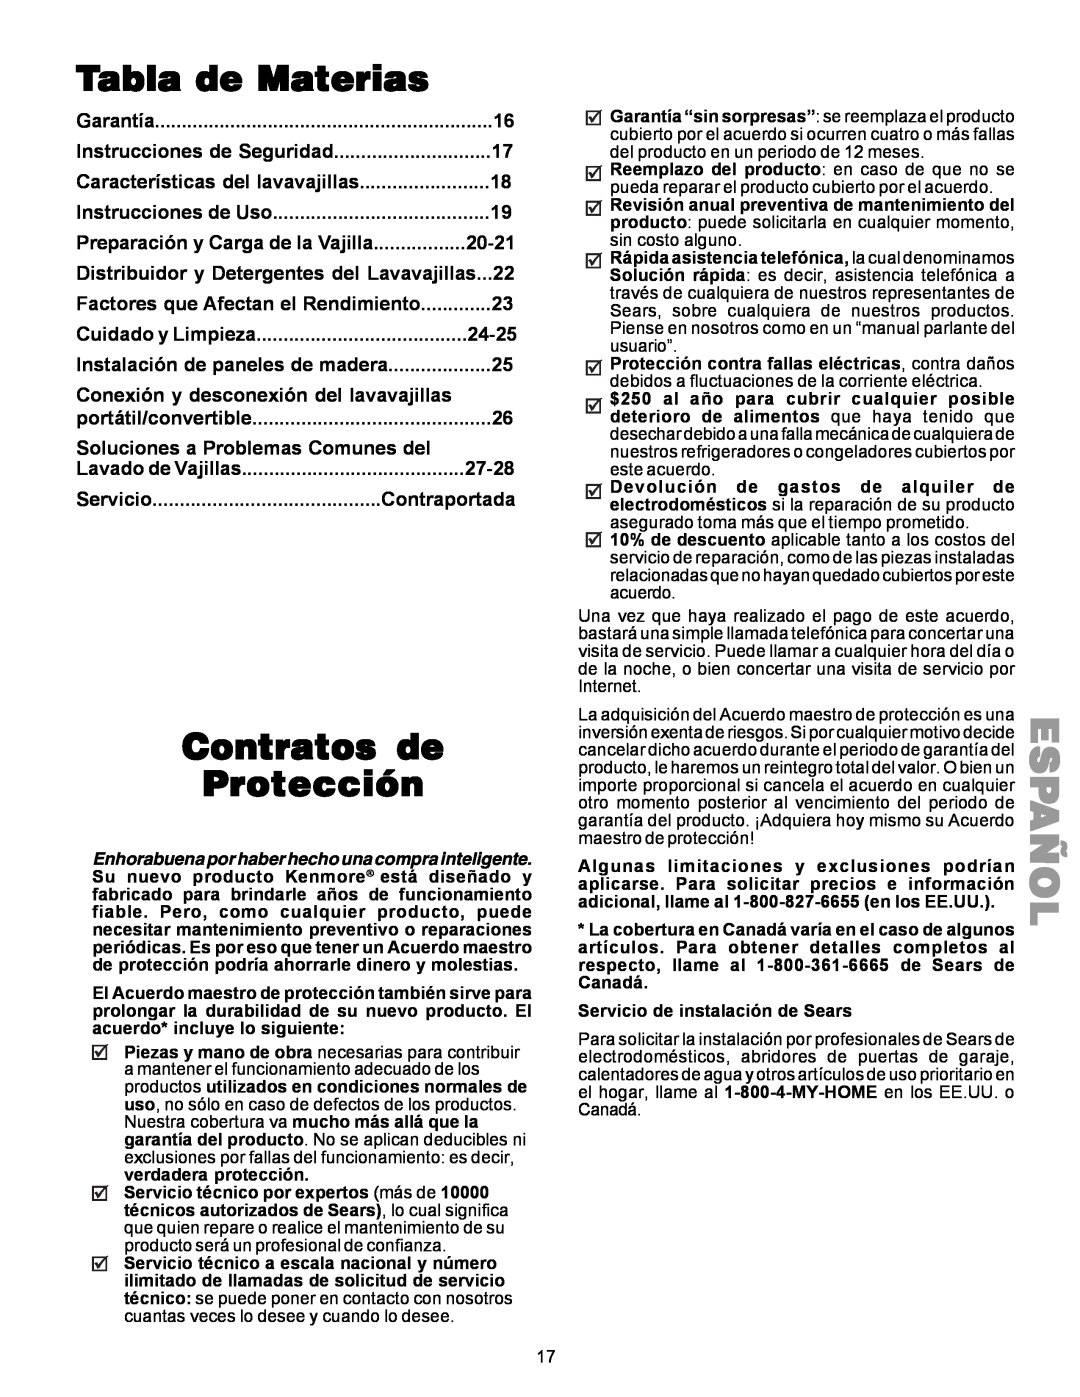 Kenmore 587.144 Español, Tabla de Materias, Contratos de Protección, 20-21, Cuidado y Limpieza, 24-25, Lavado de Vajillas 